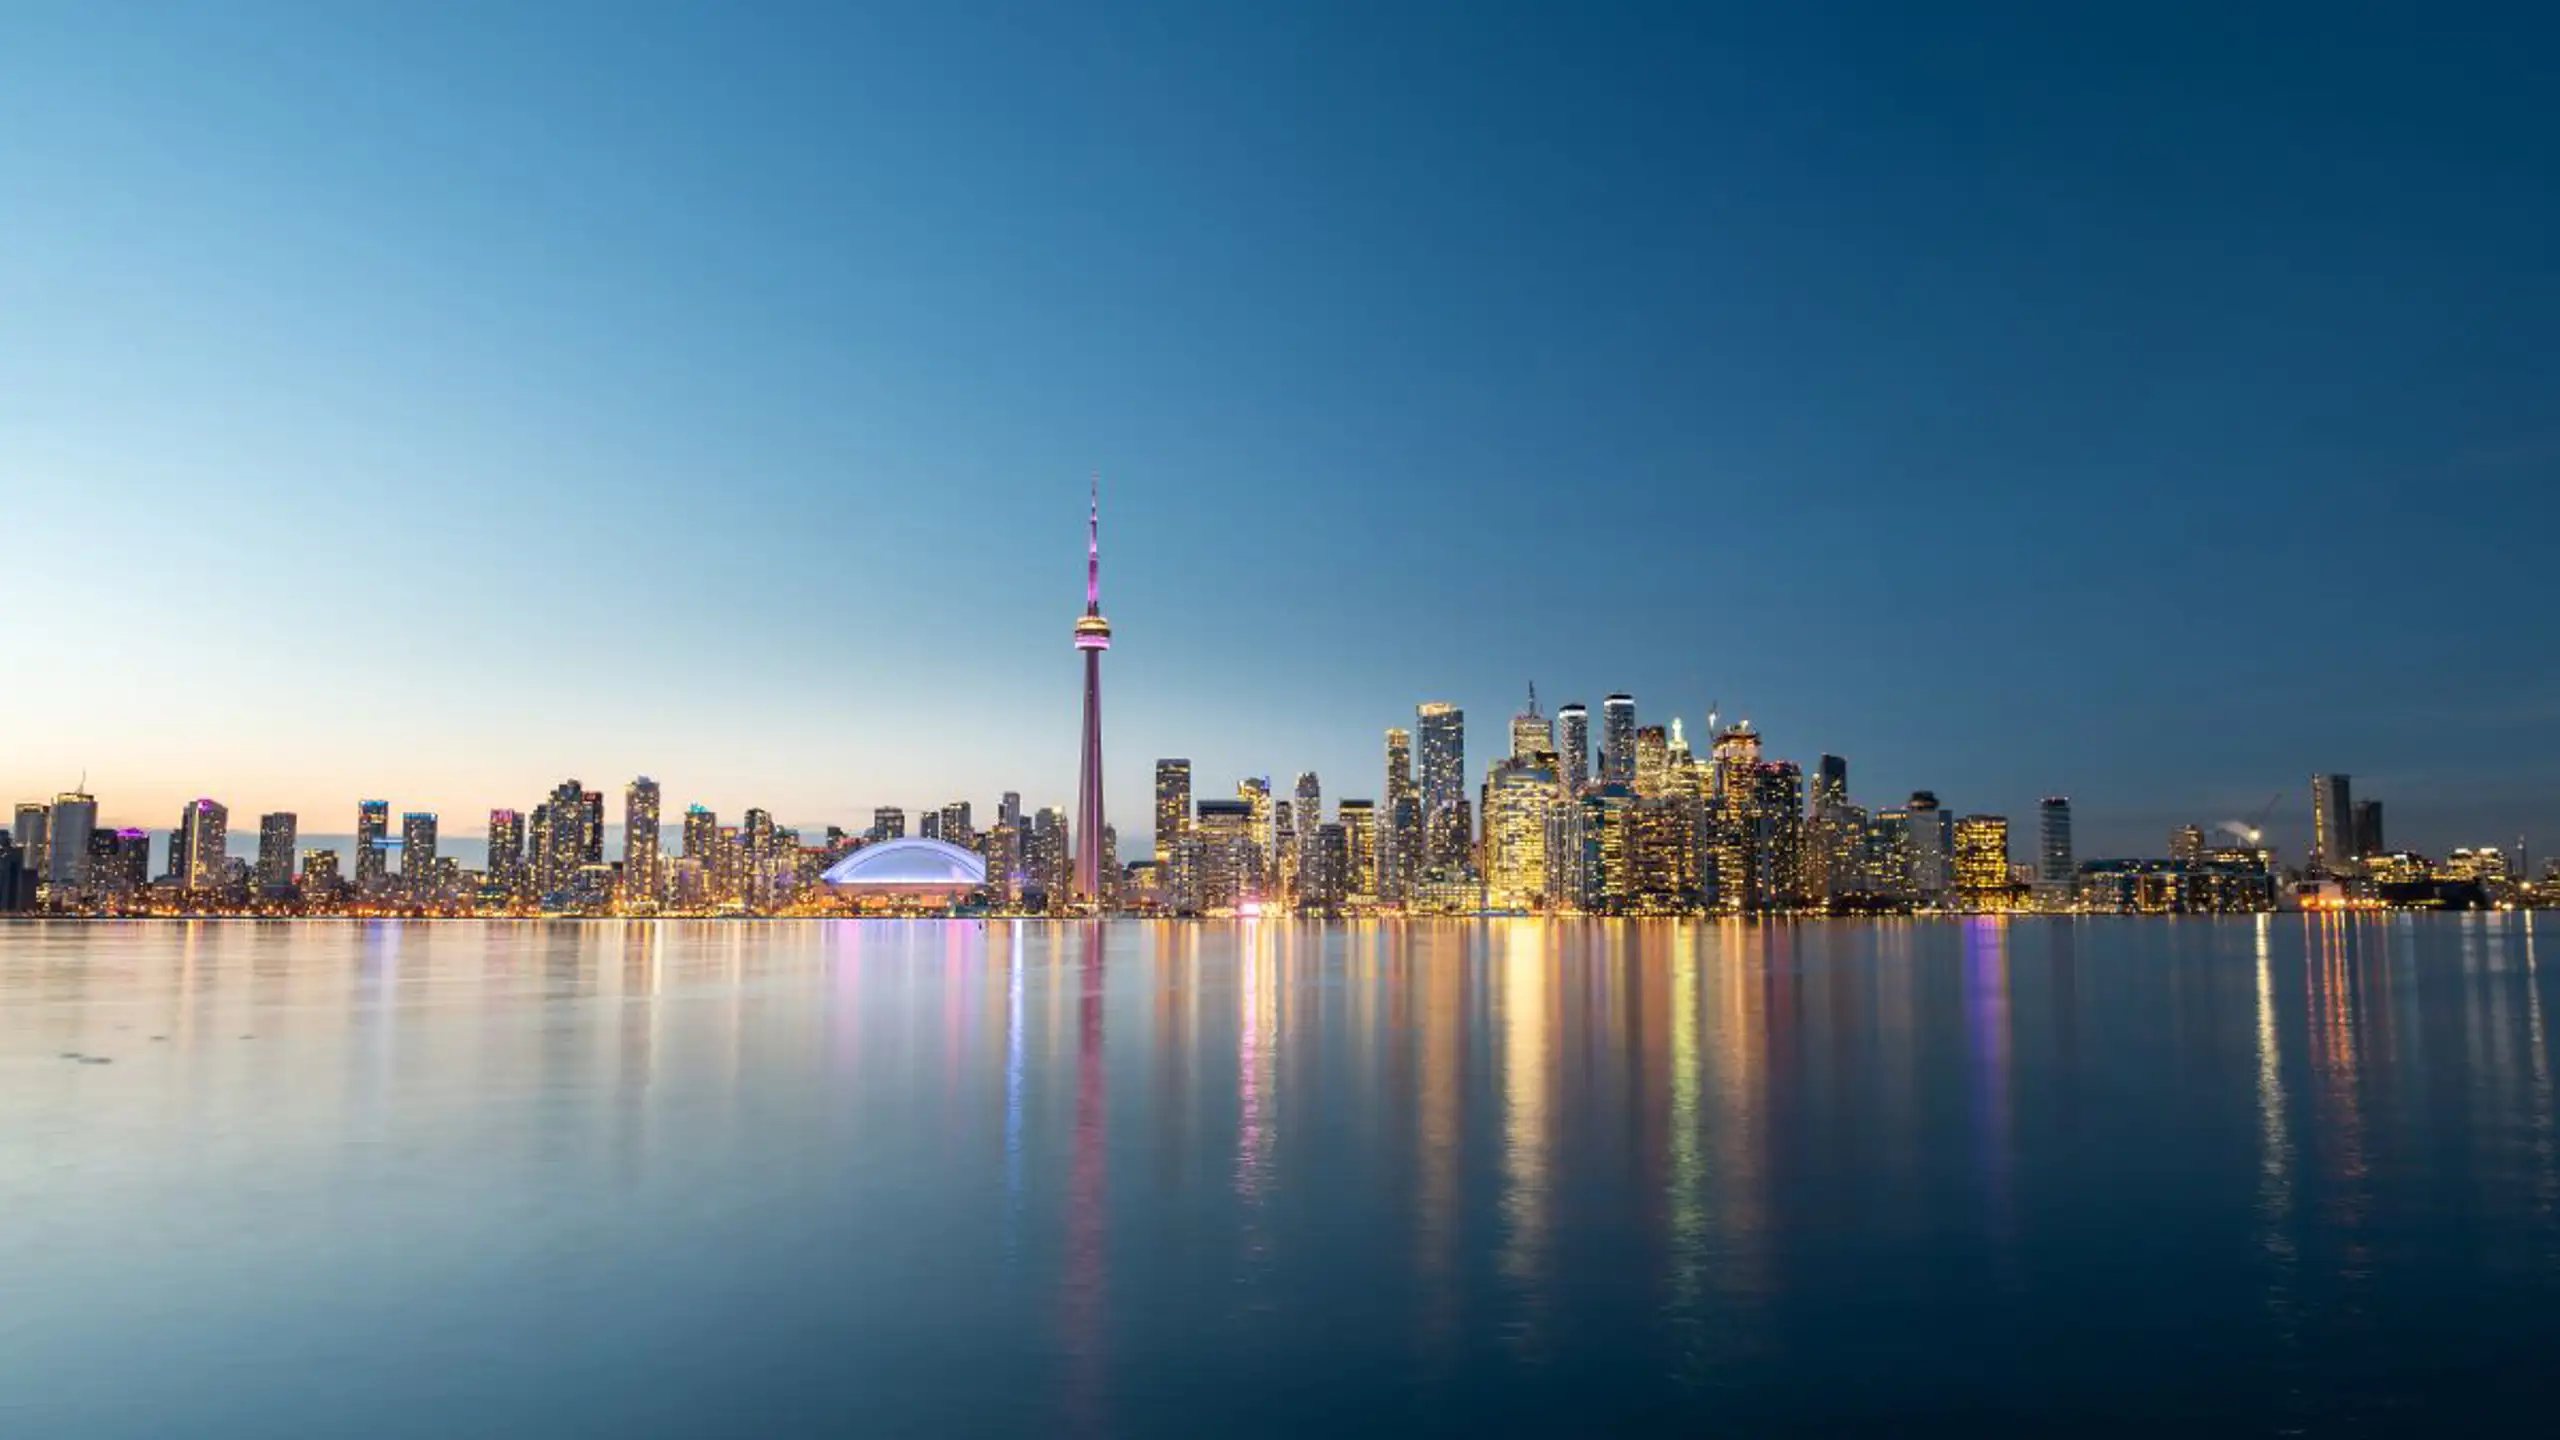 Toronto City Skyline At Night Ontario Canada 2023 11 27 05 30 08 Utc